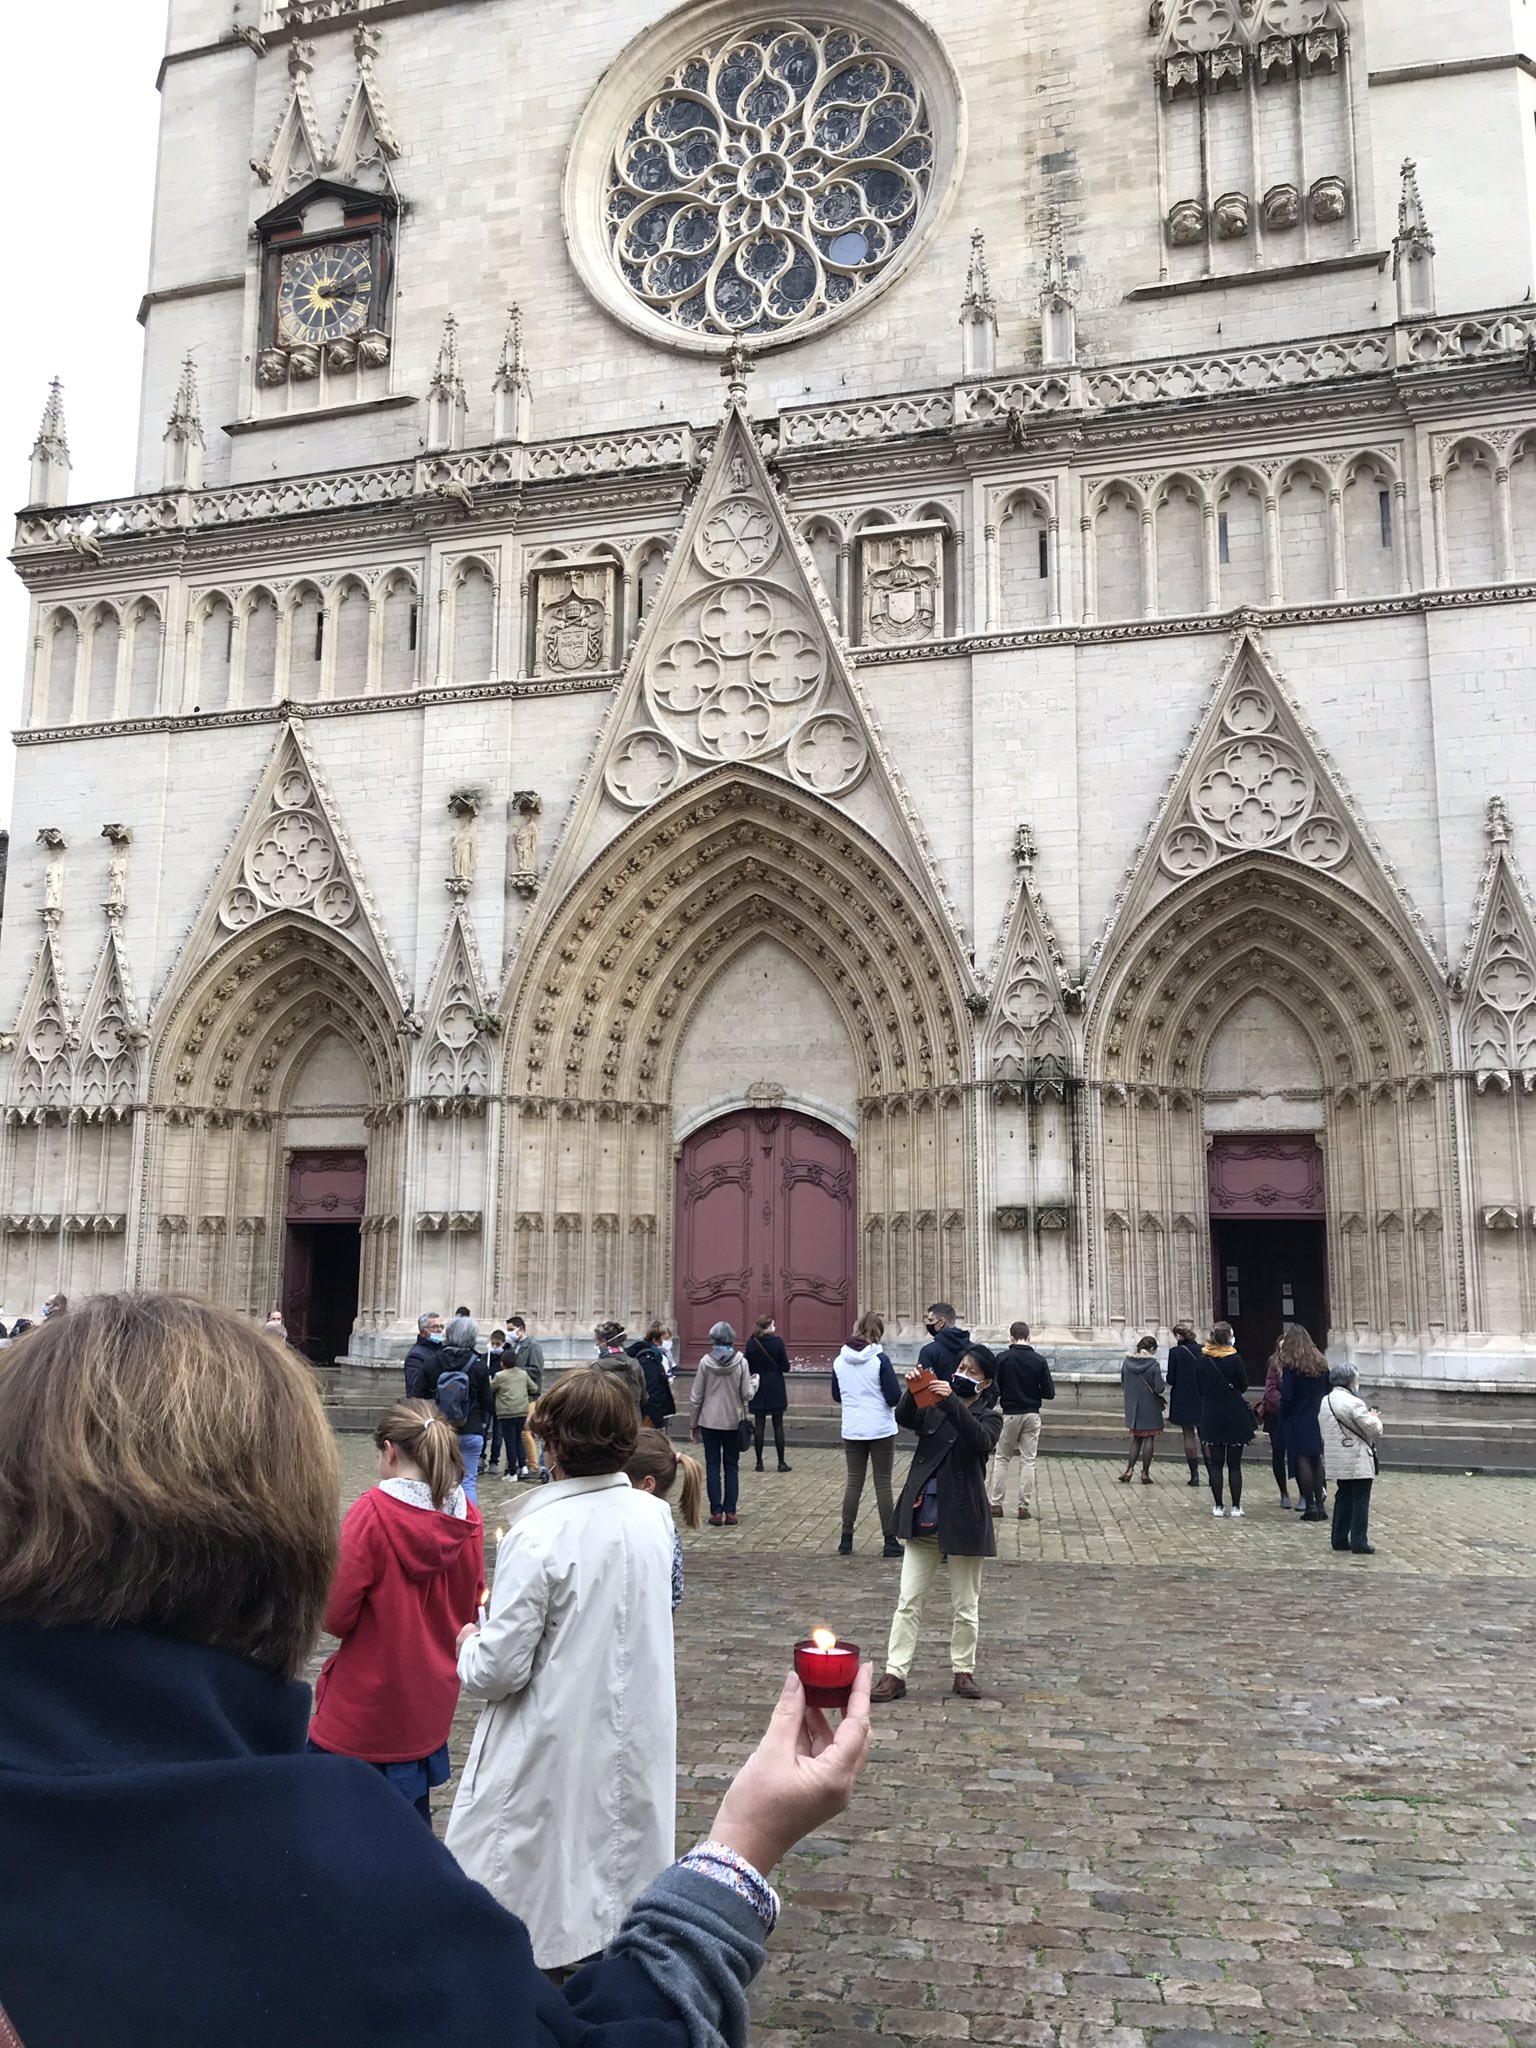  A Lyon, des catholiques se rassemblent devant la cathédrale, ce 8 novembre 2020, pour demander la messe (Photos) Emtubbrxcaae1vs